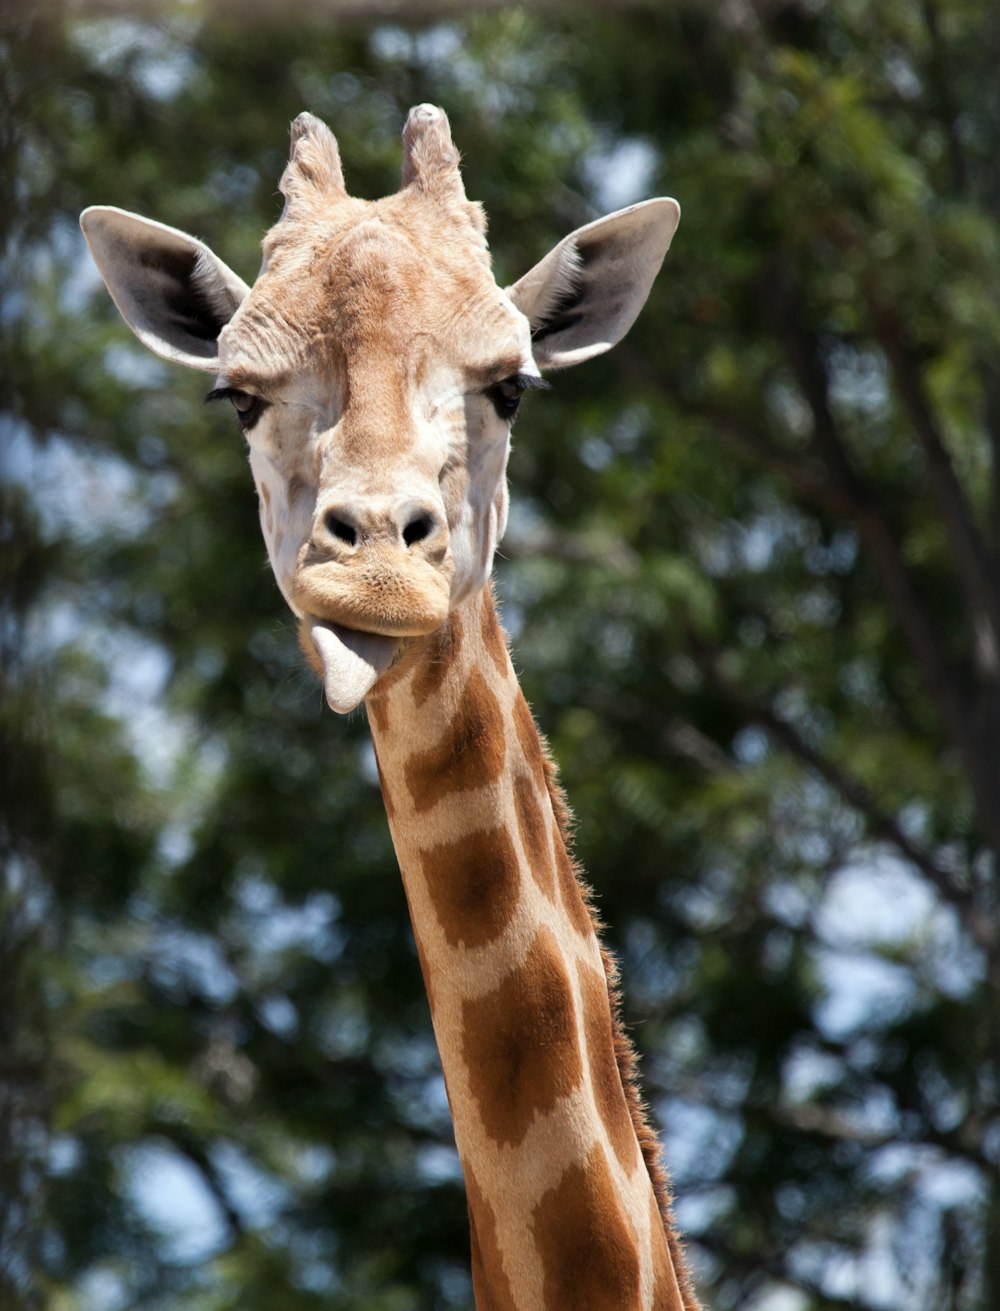 brown giraffe in tilt shift lens